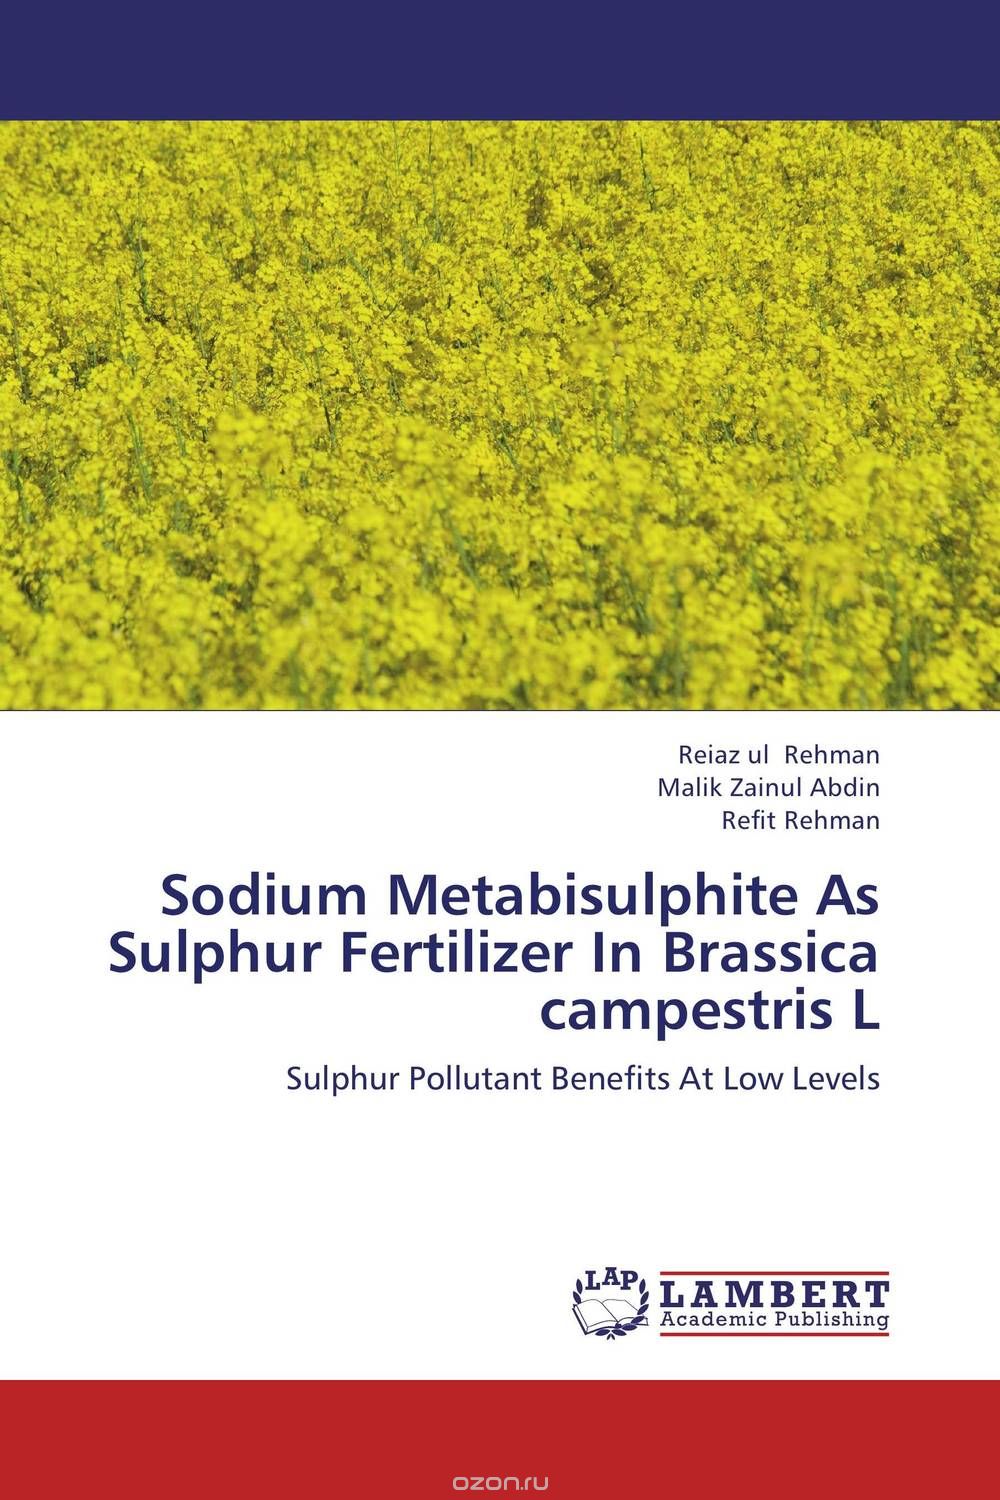 Скачать книгу "Sodium Metabisulphite As Sulphur Fertilizer In Brassica campestris L"